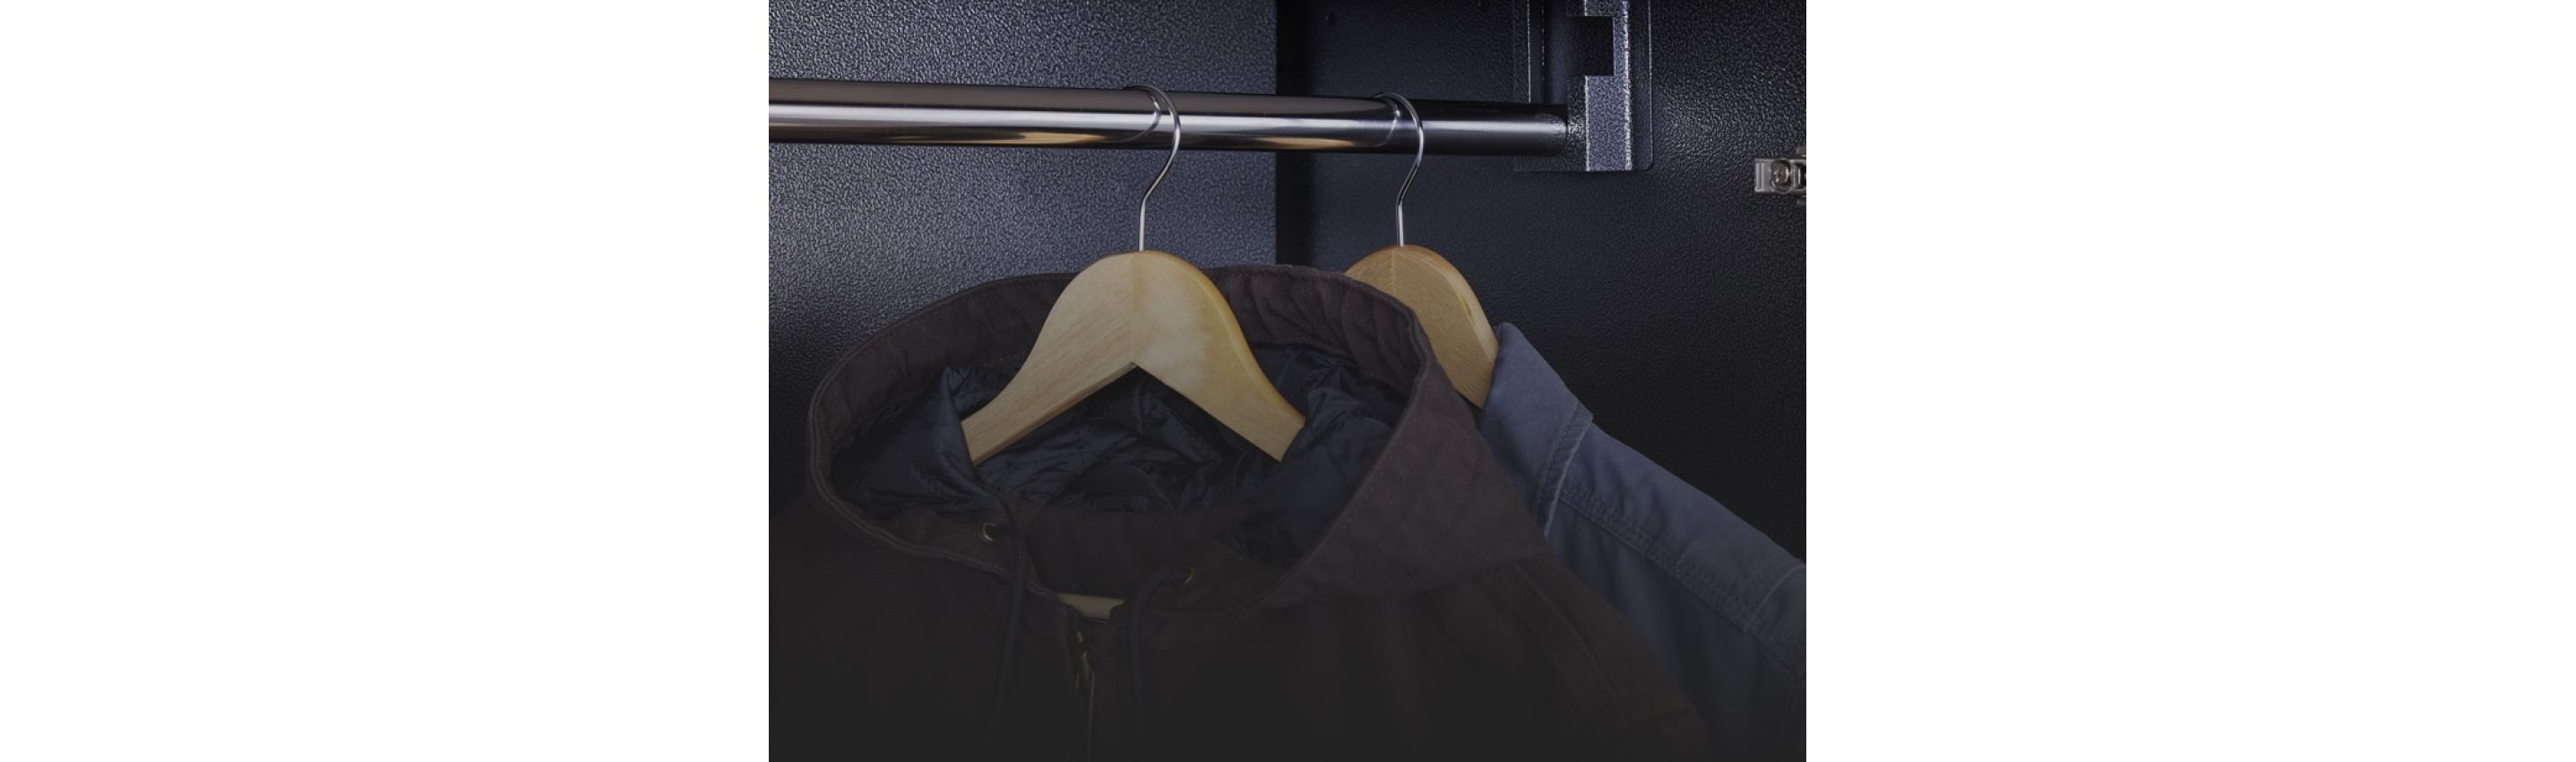 Deux manteaux suspendus à des cintre dans un système de rangement Gladiator.